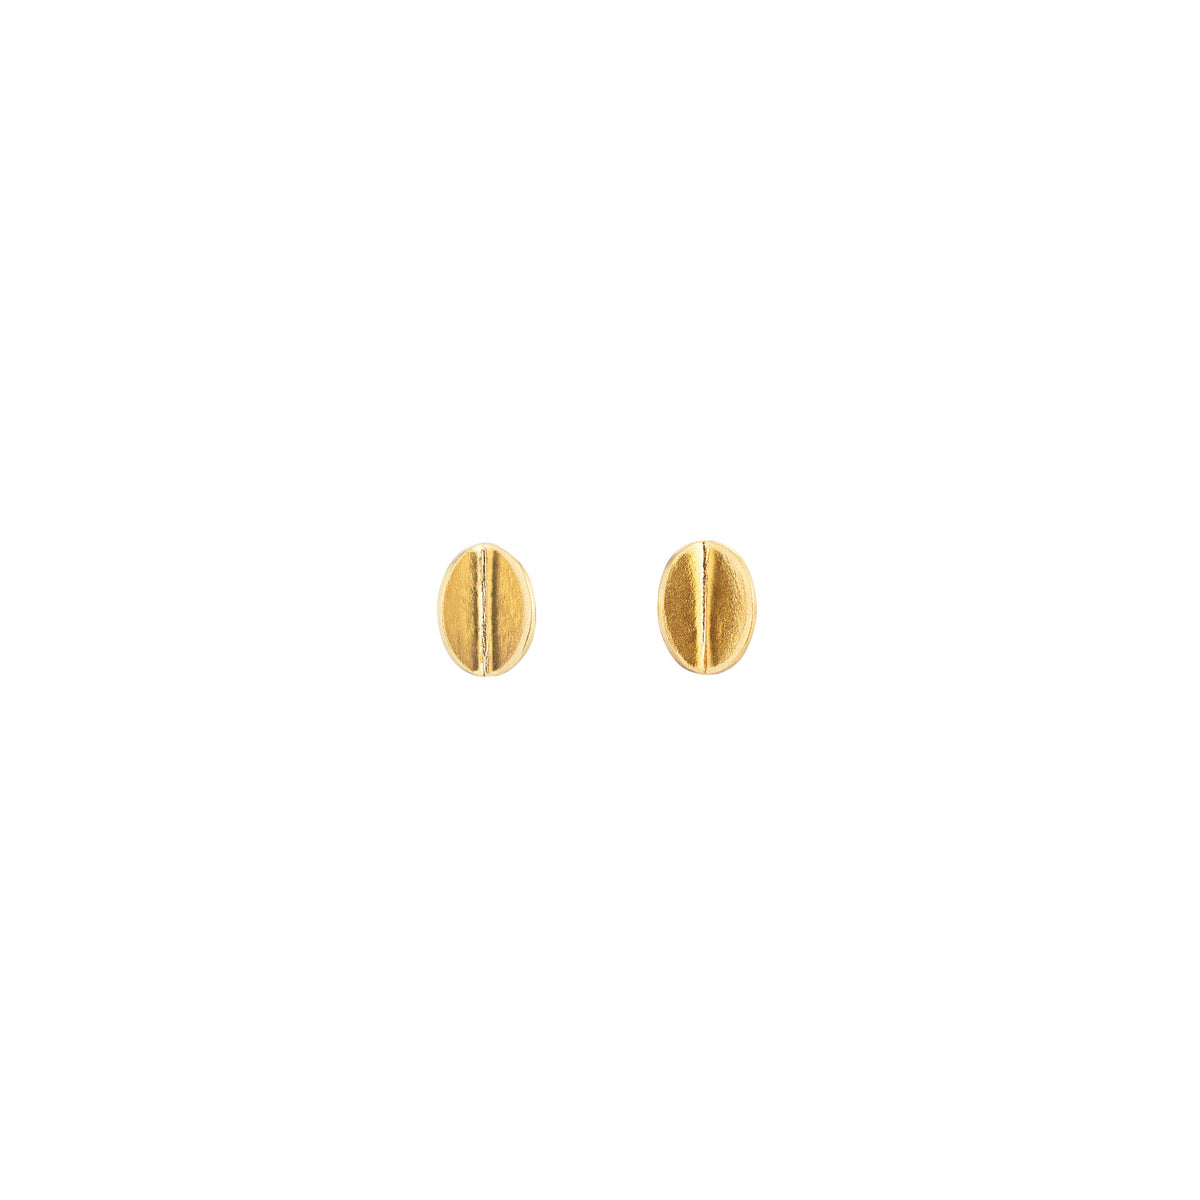 Fold earrings - small